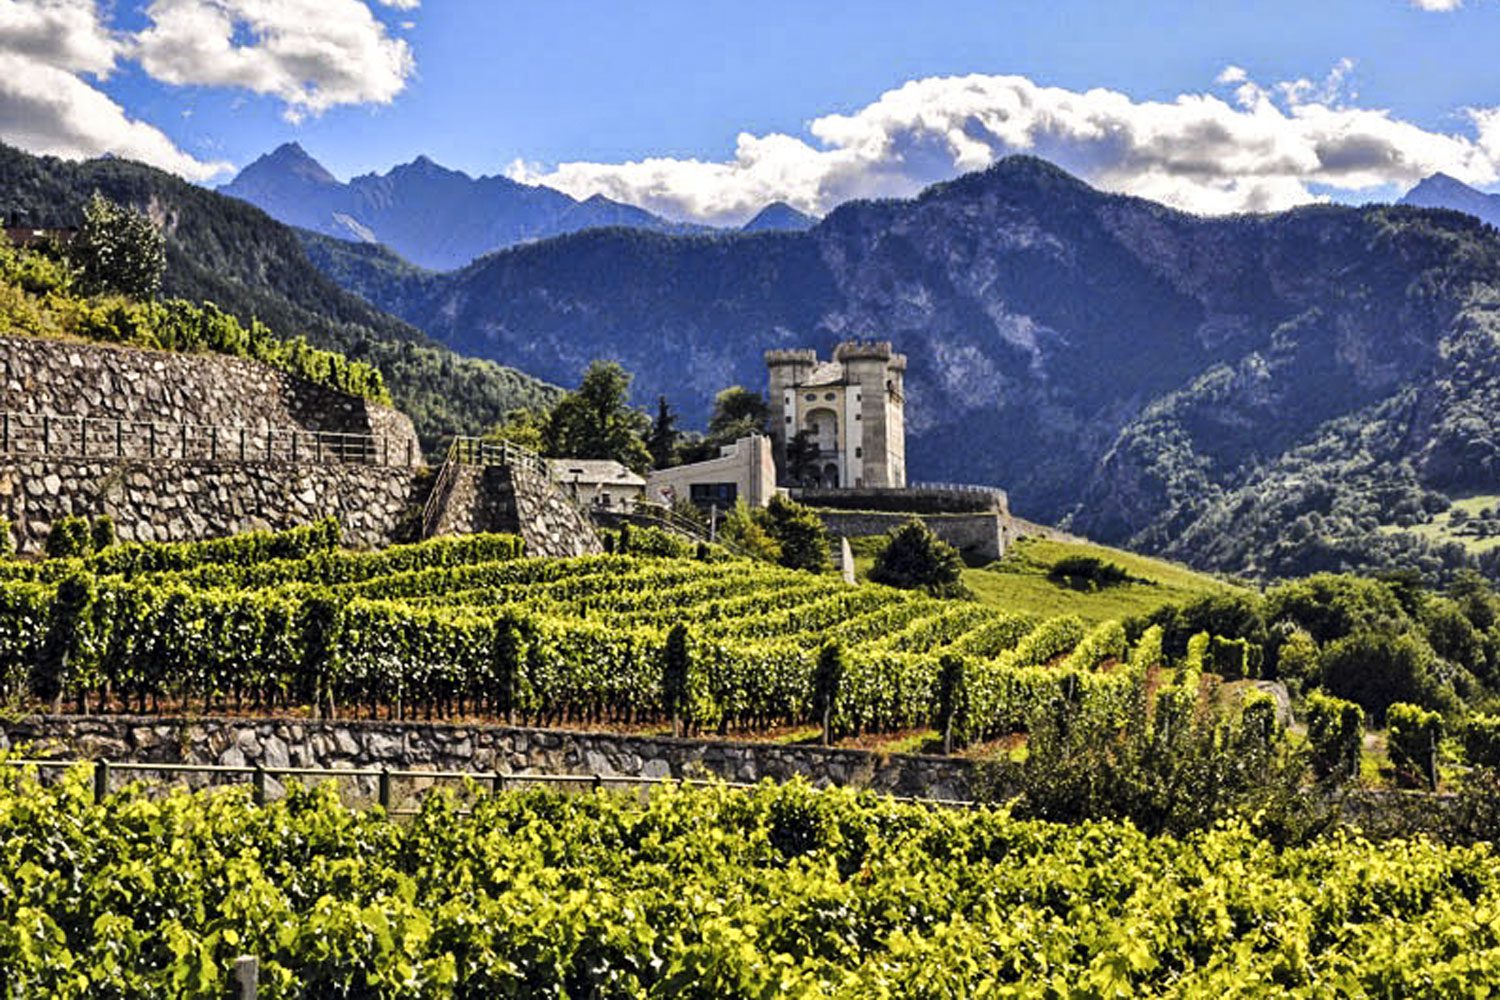 Le Regioni del vino: Valle d’Aosta